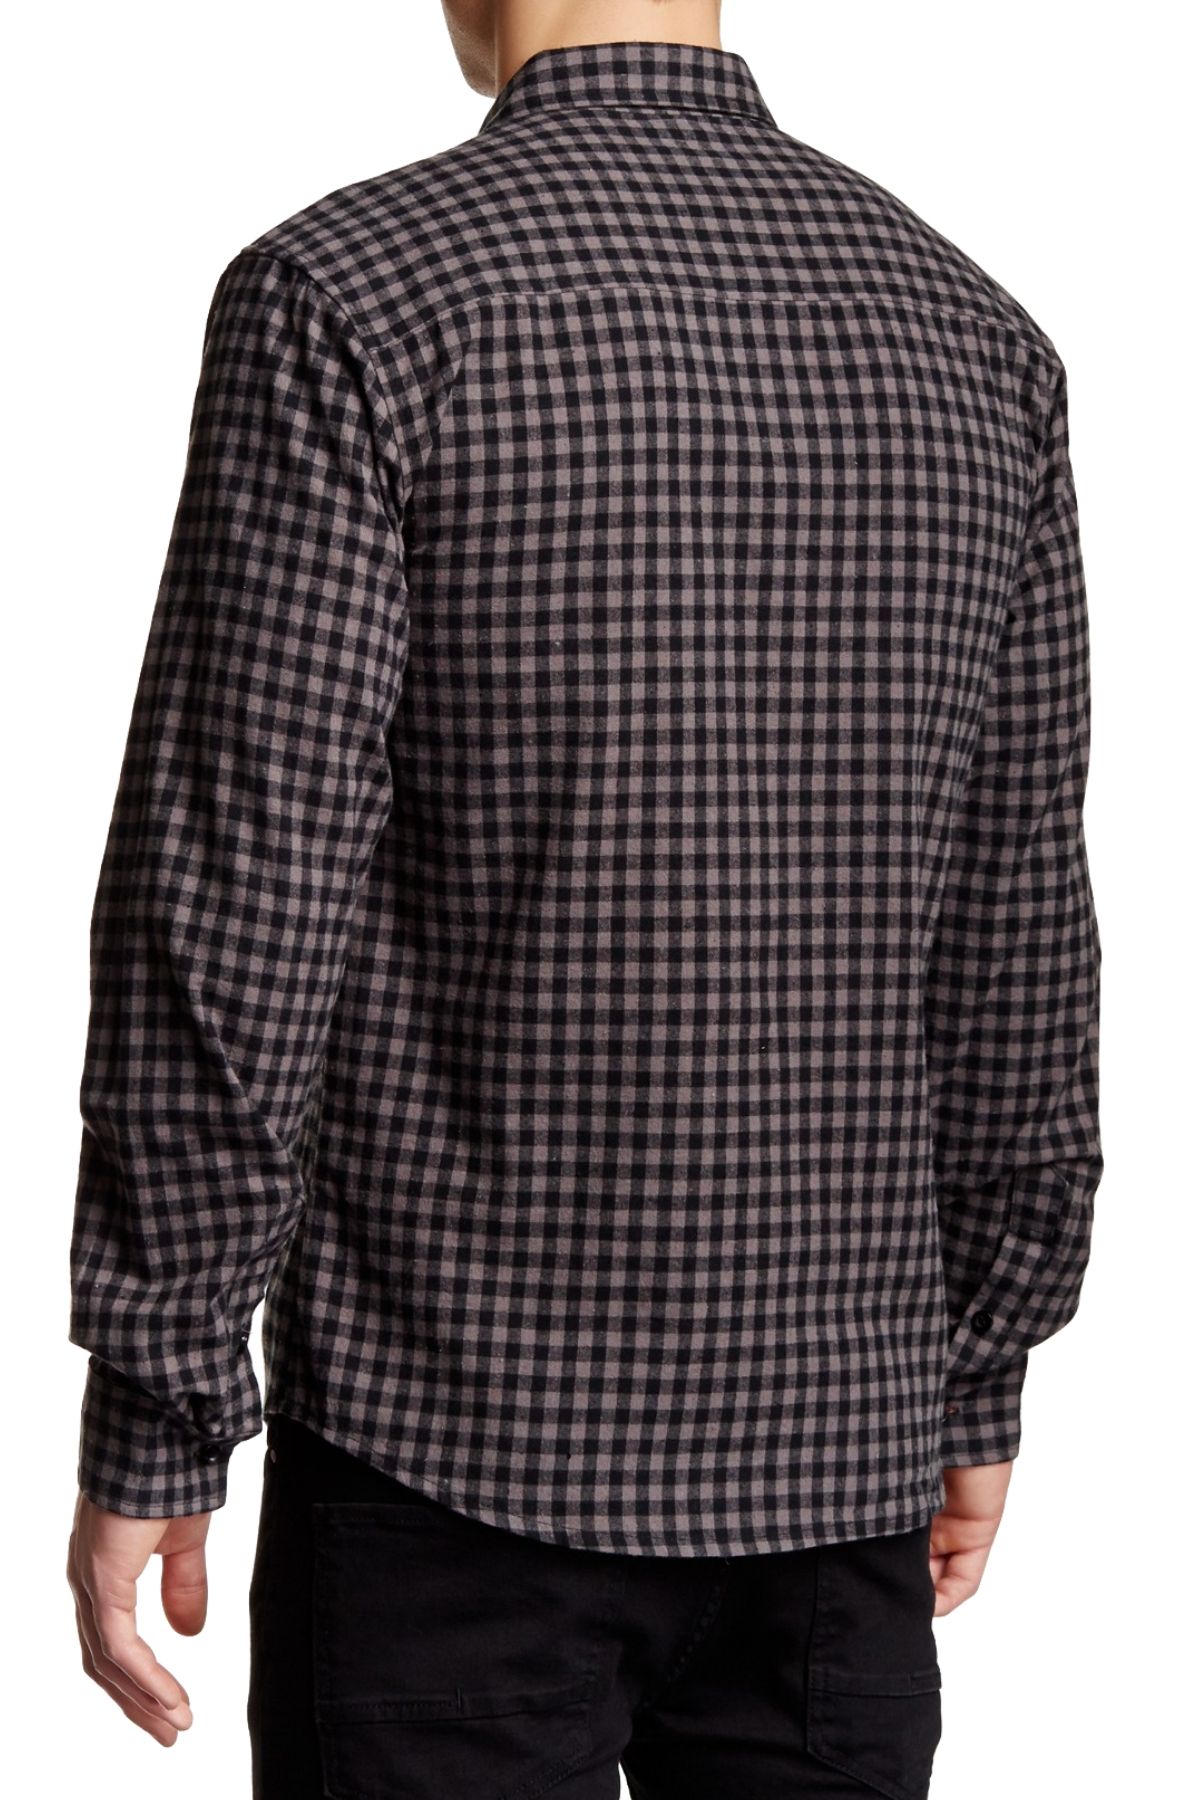 Filthy Etiquette Grey & Black Harper Button-Up Shirt